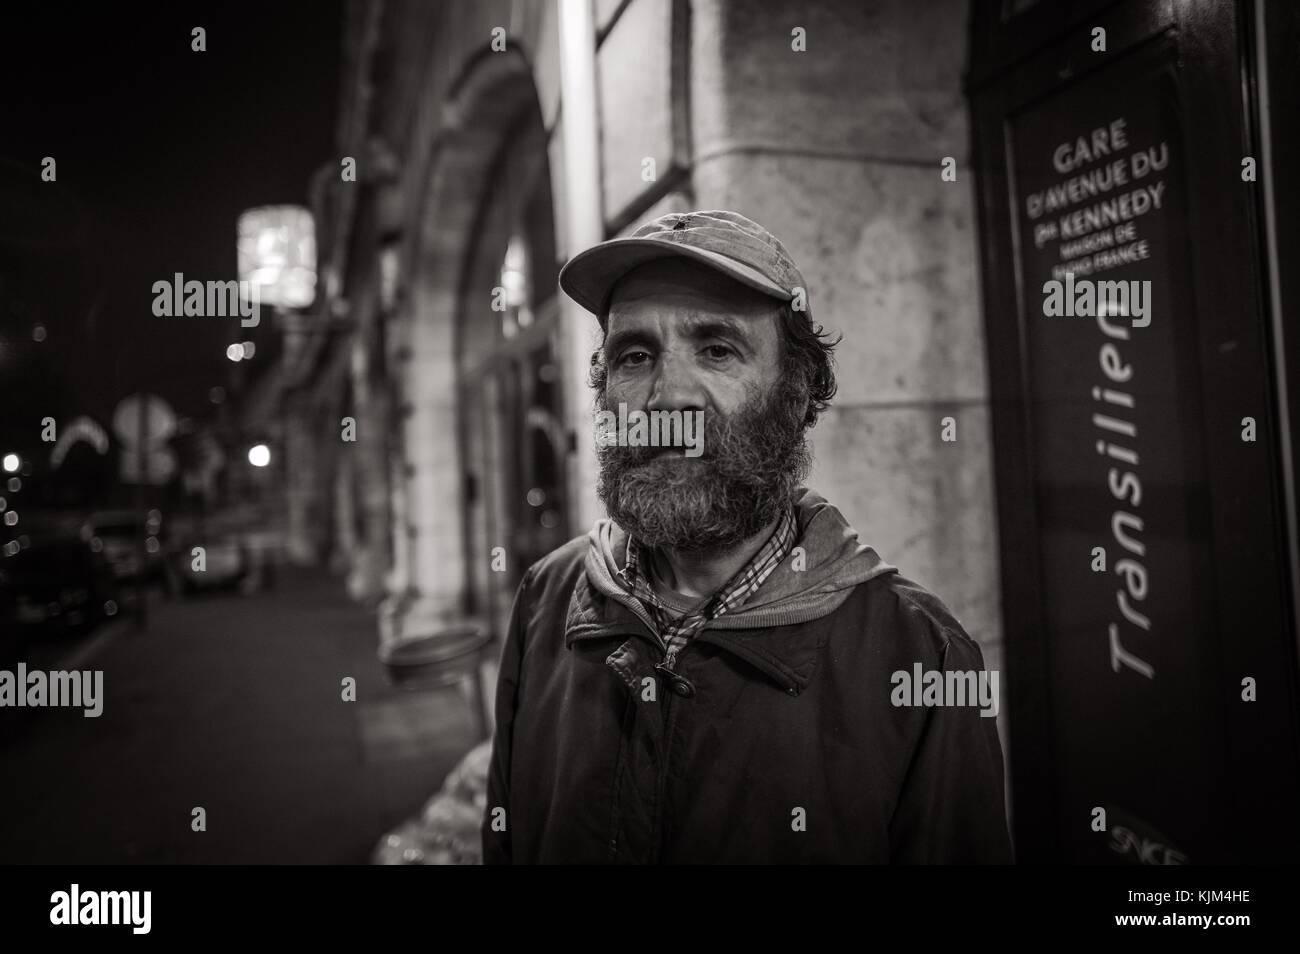 La rue - 20/11/2012 - - Abdelkarim, qui a vécu pendant des années sur un réseau de chauffage Kennedy Station - Sylvain Leser / le Pictorium Banque D'Images